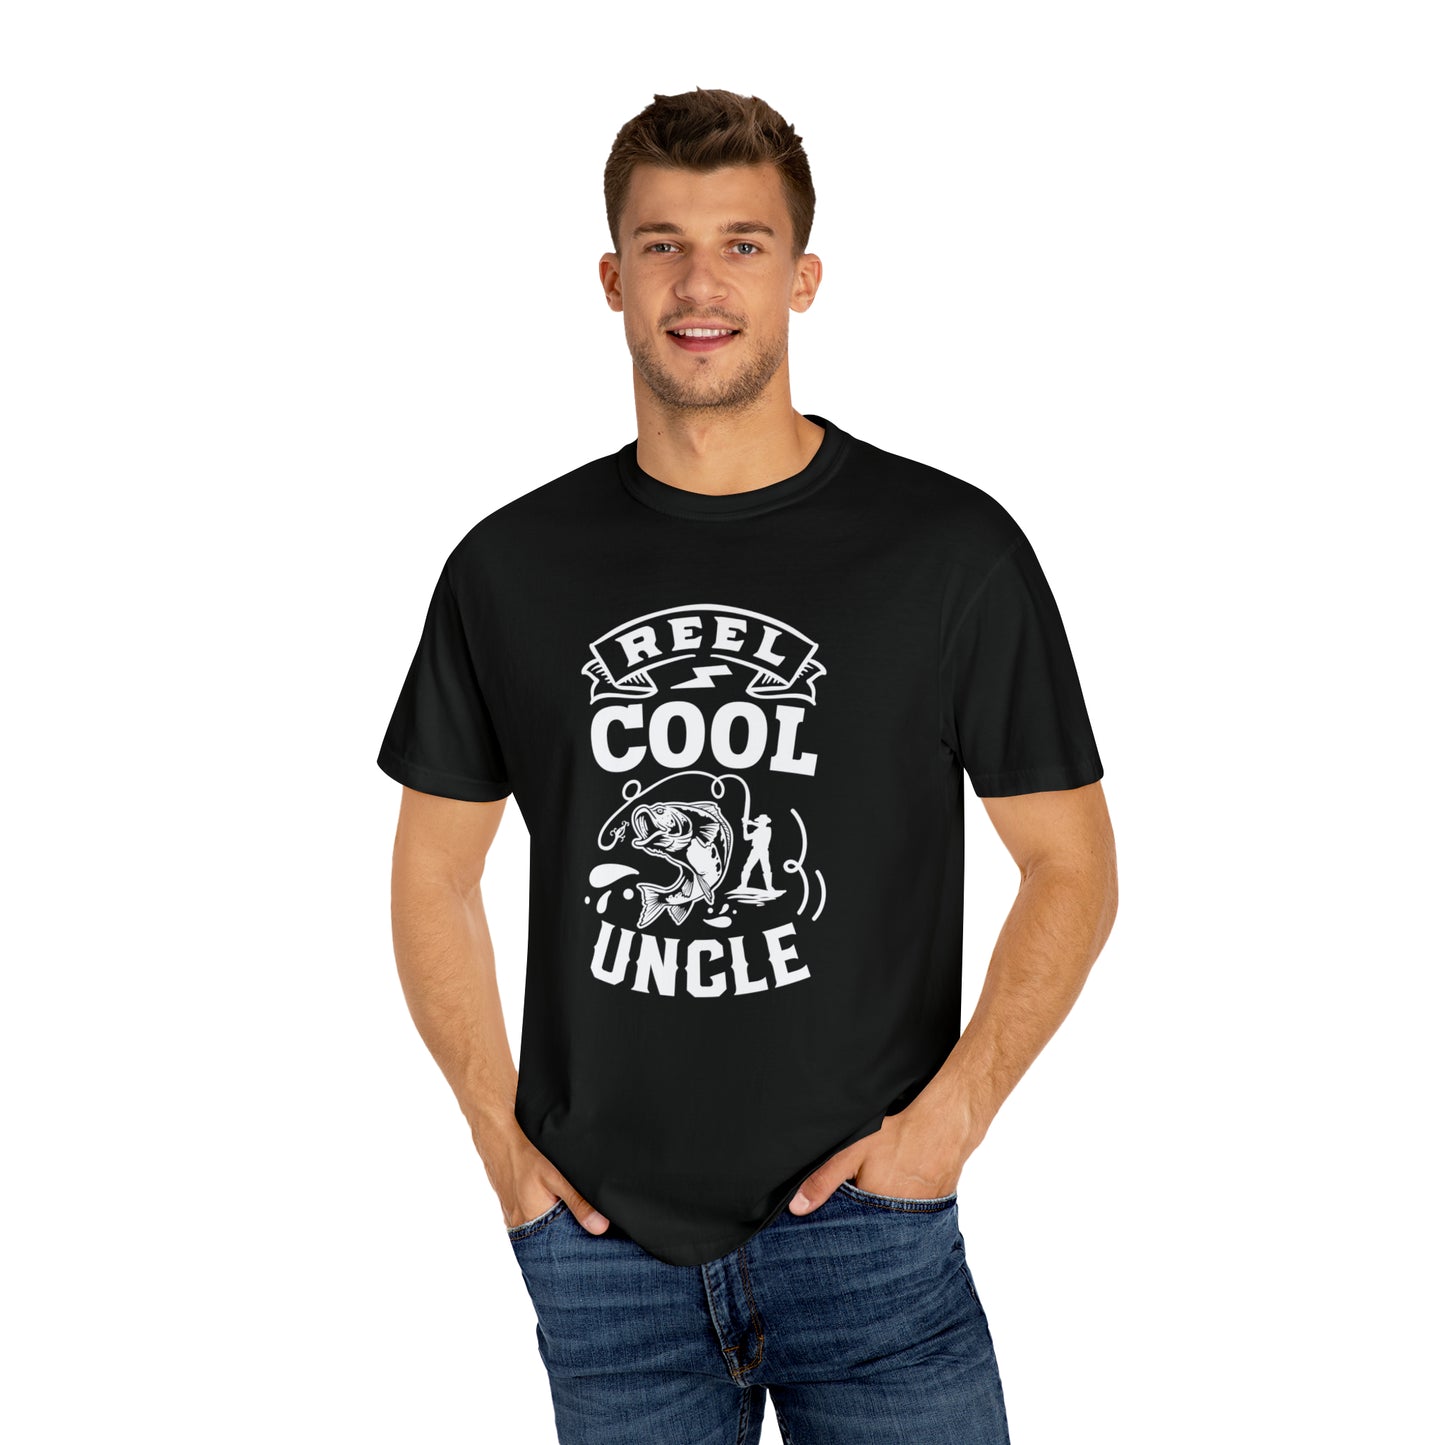 リールクールおじさん: この T シャツでスタイルと楽しみを取り入れましょう!